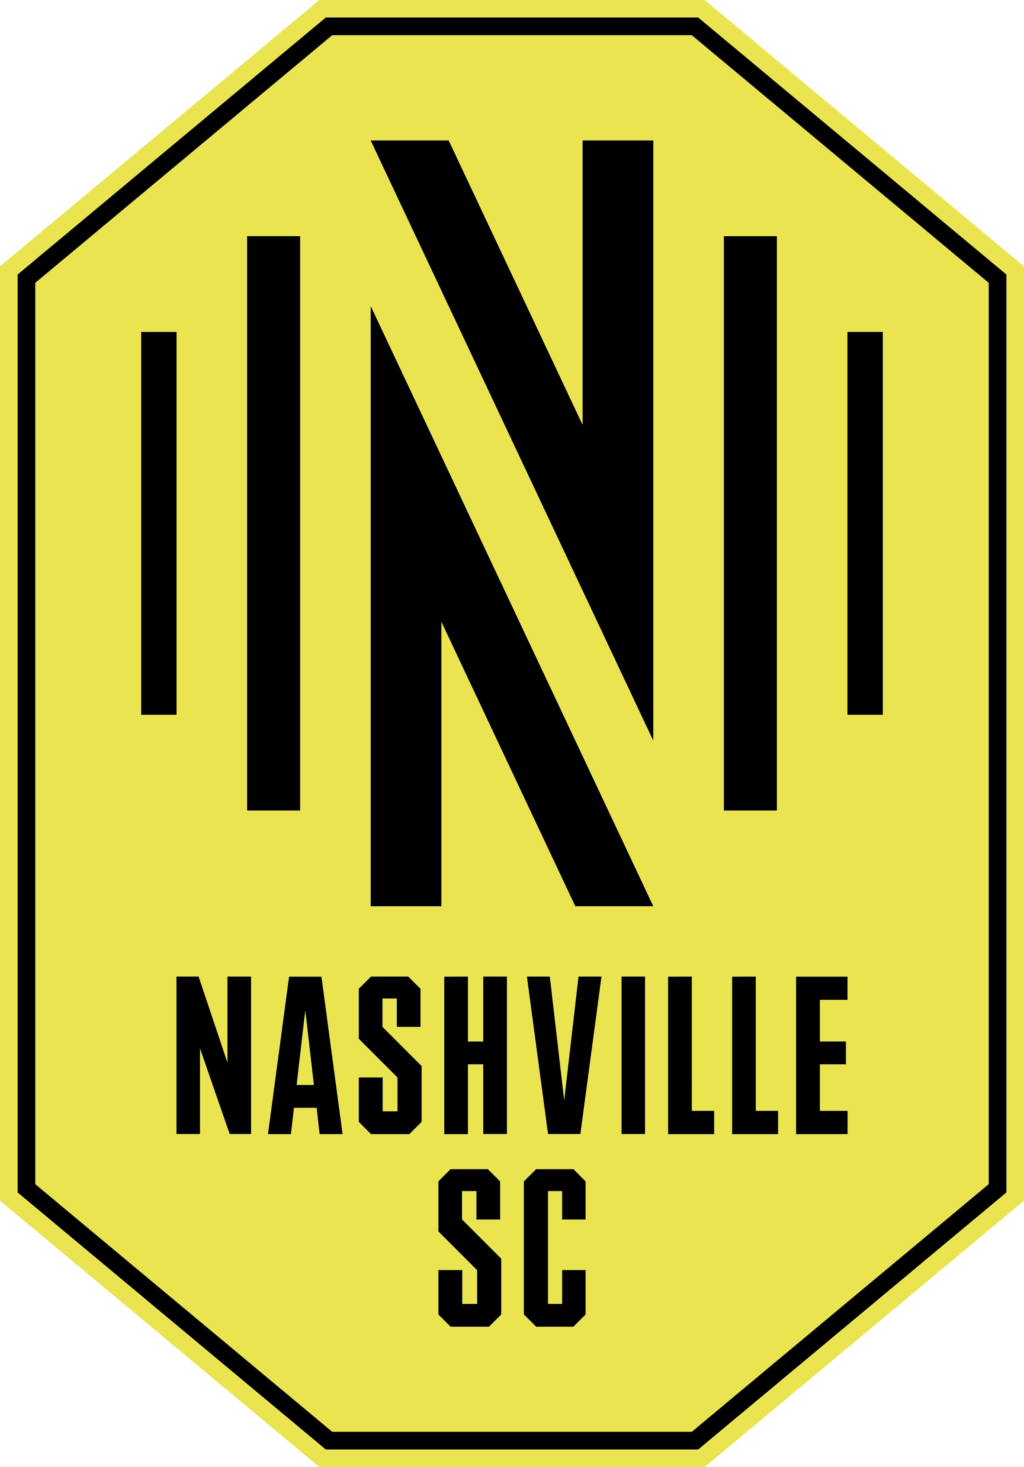 nashville sc 01 1 MLS Nashville SC SVG, SVG Files For Silhouette, Nashville SC Files For Cricut, Nashville SC SVG, DXF, EPS, PNG Instant Download. Nashville SC SVG, SVG Files For Silhouette, Nashville SC Files For Cricut, Nashville SC SVG, DXF, EPS, PNG Instant Download.